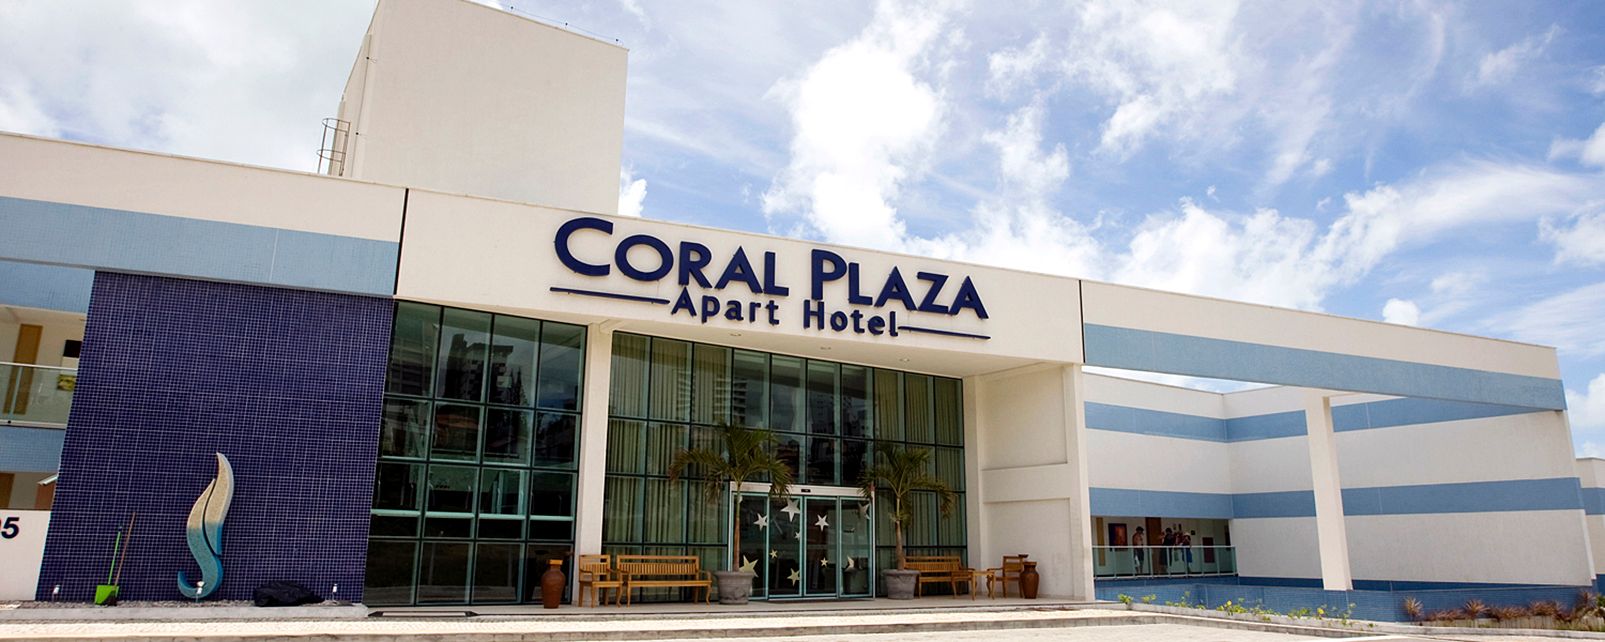 Hotel Coral Plaza